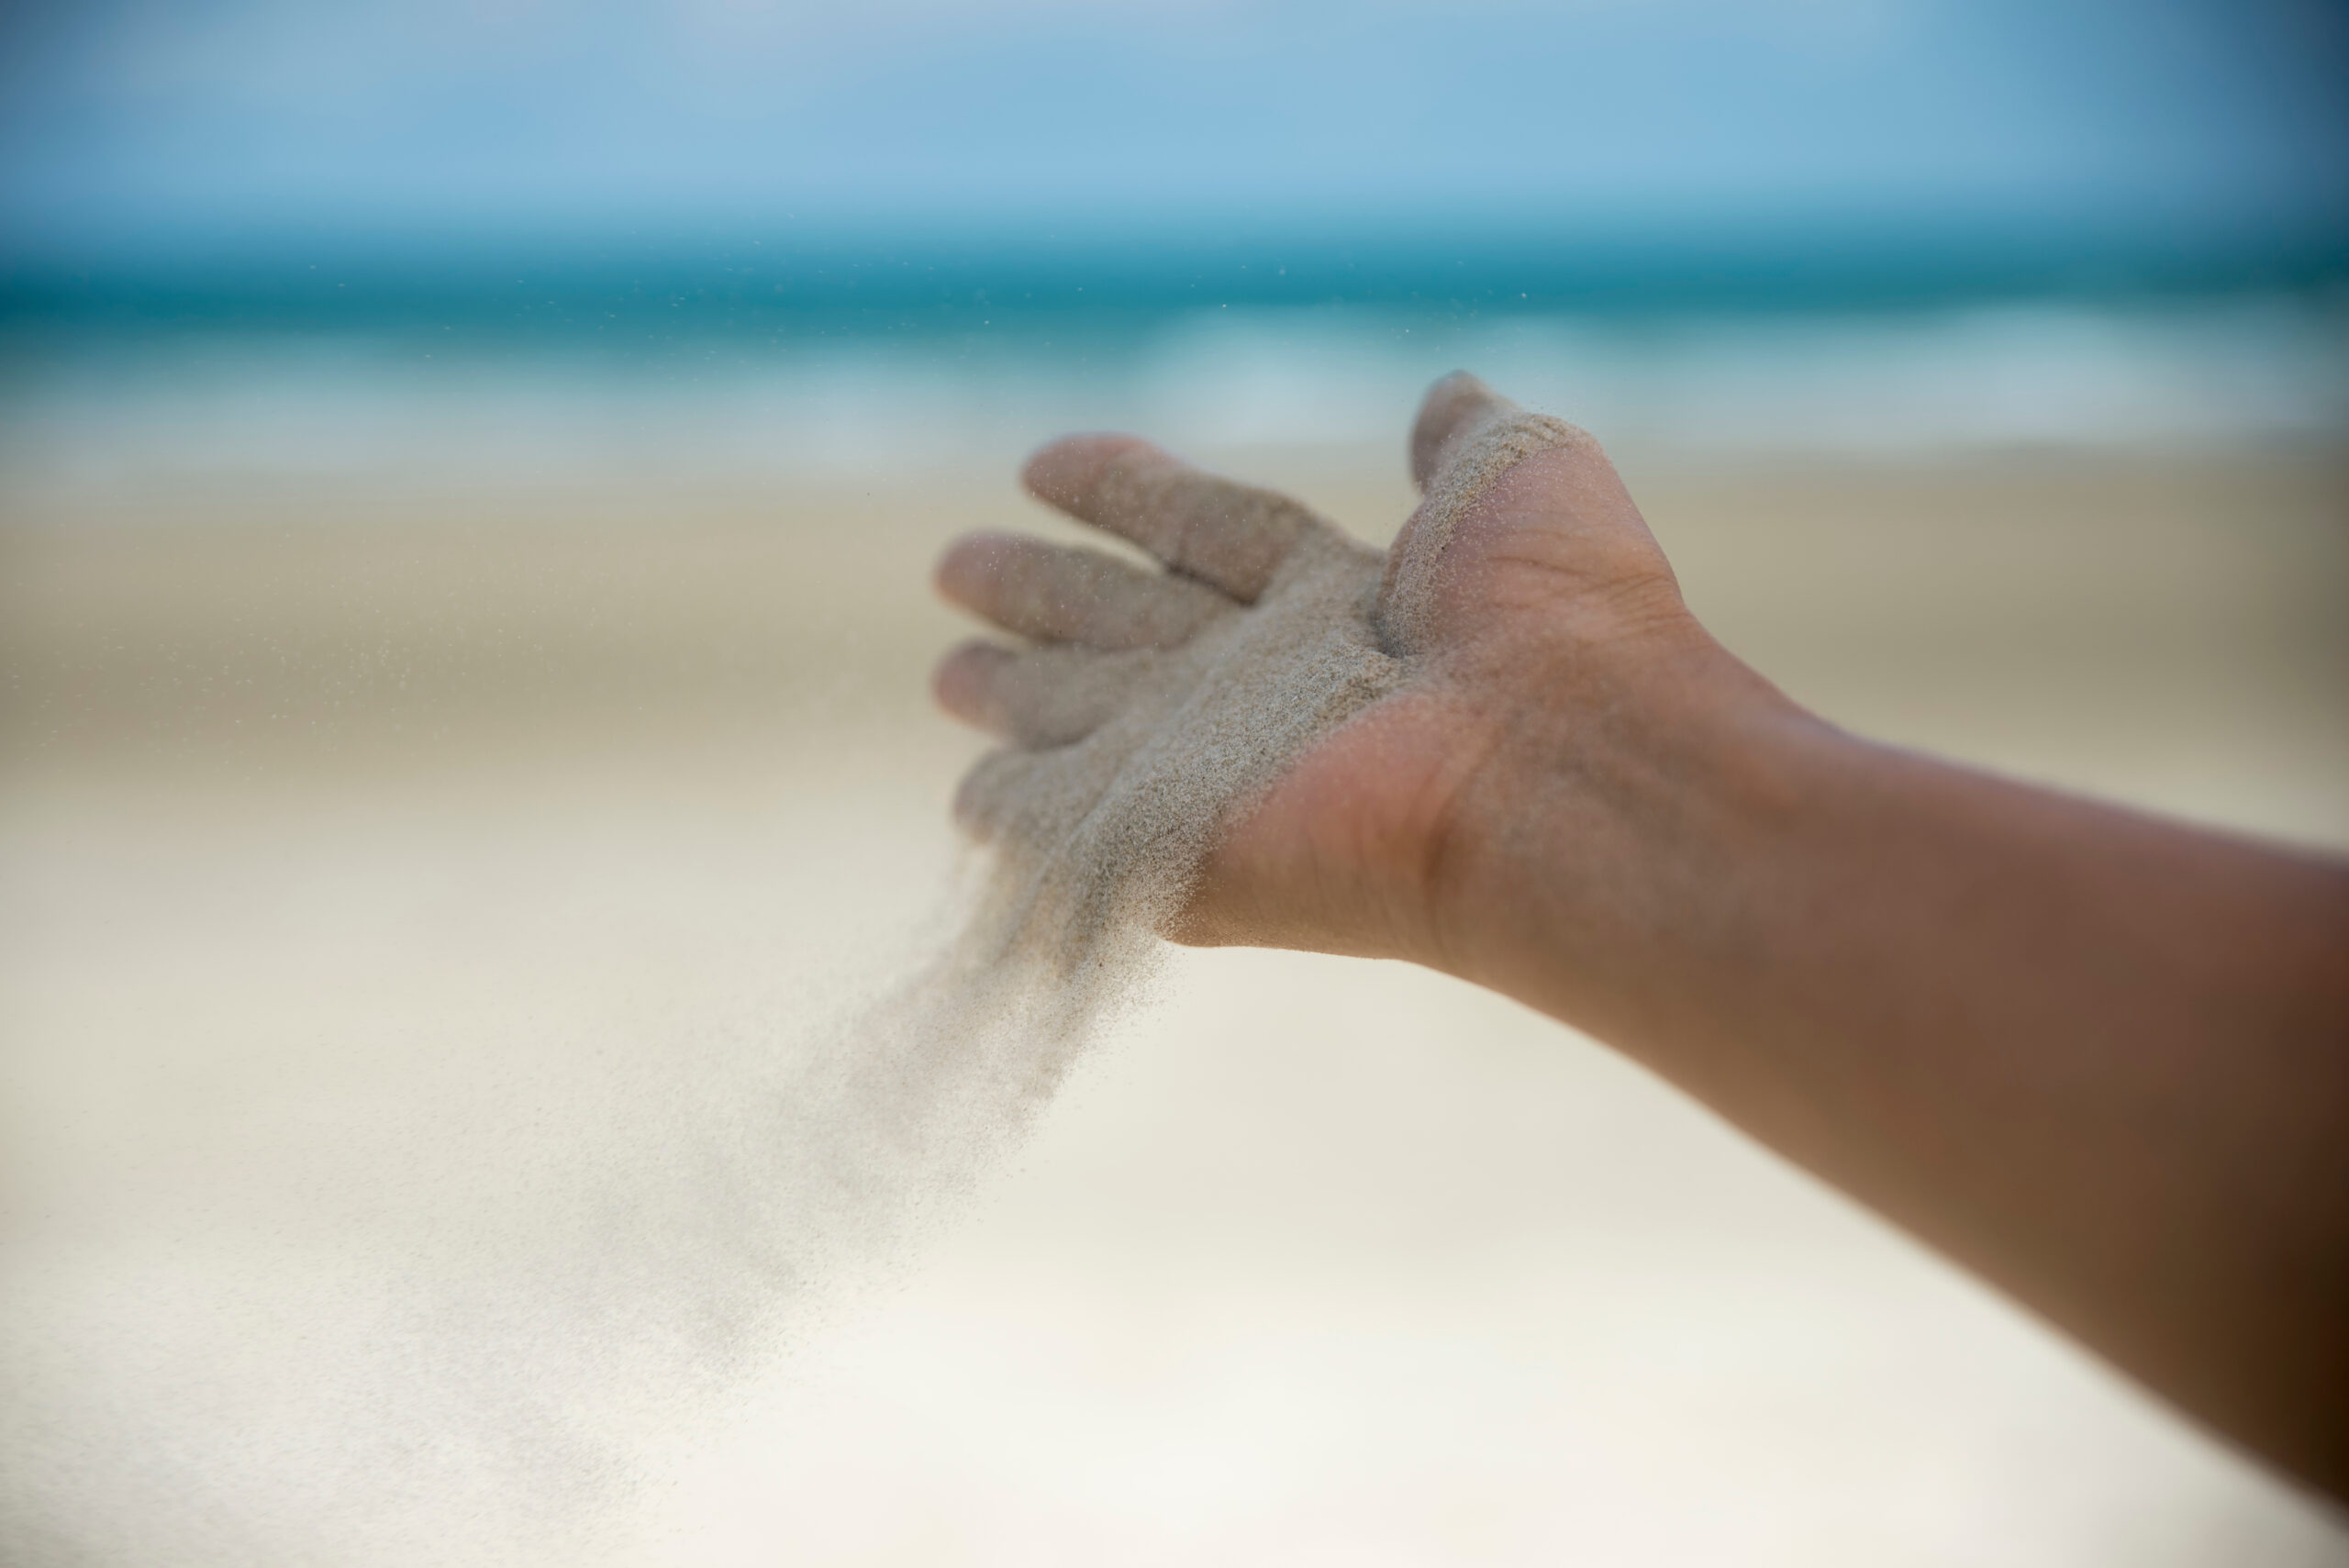 Main ouverte laissant s'envoyer du sable au vent